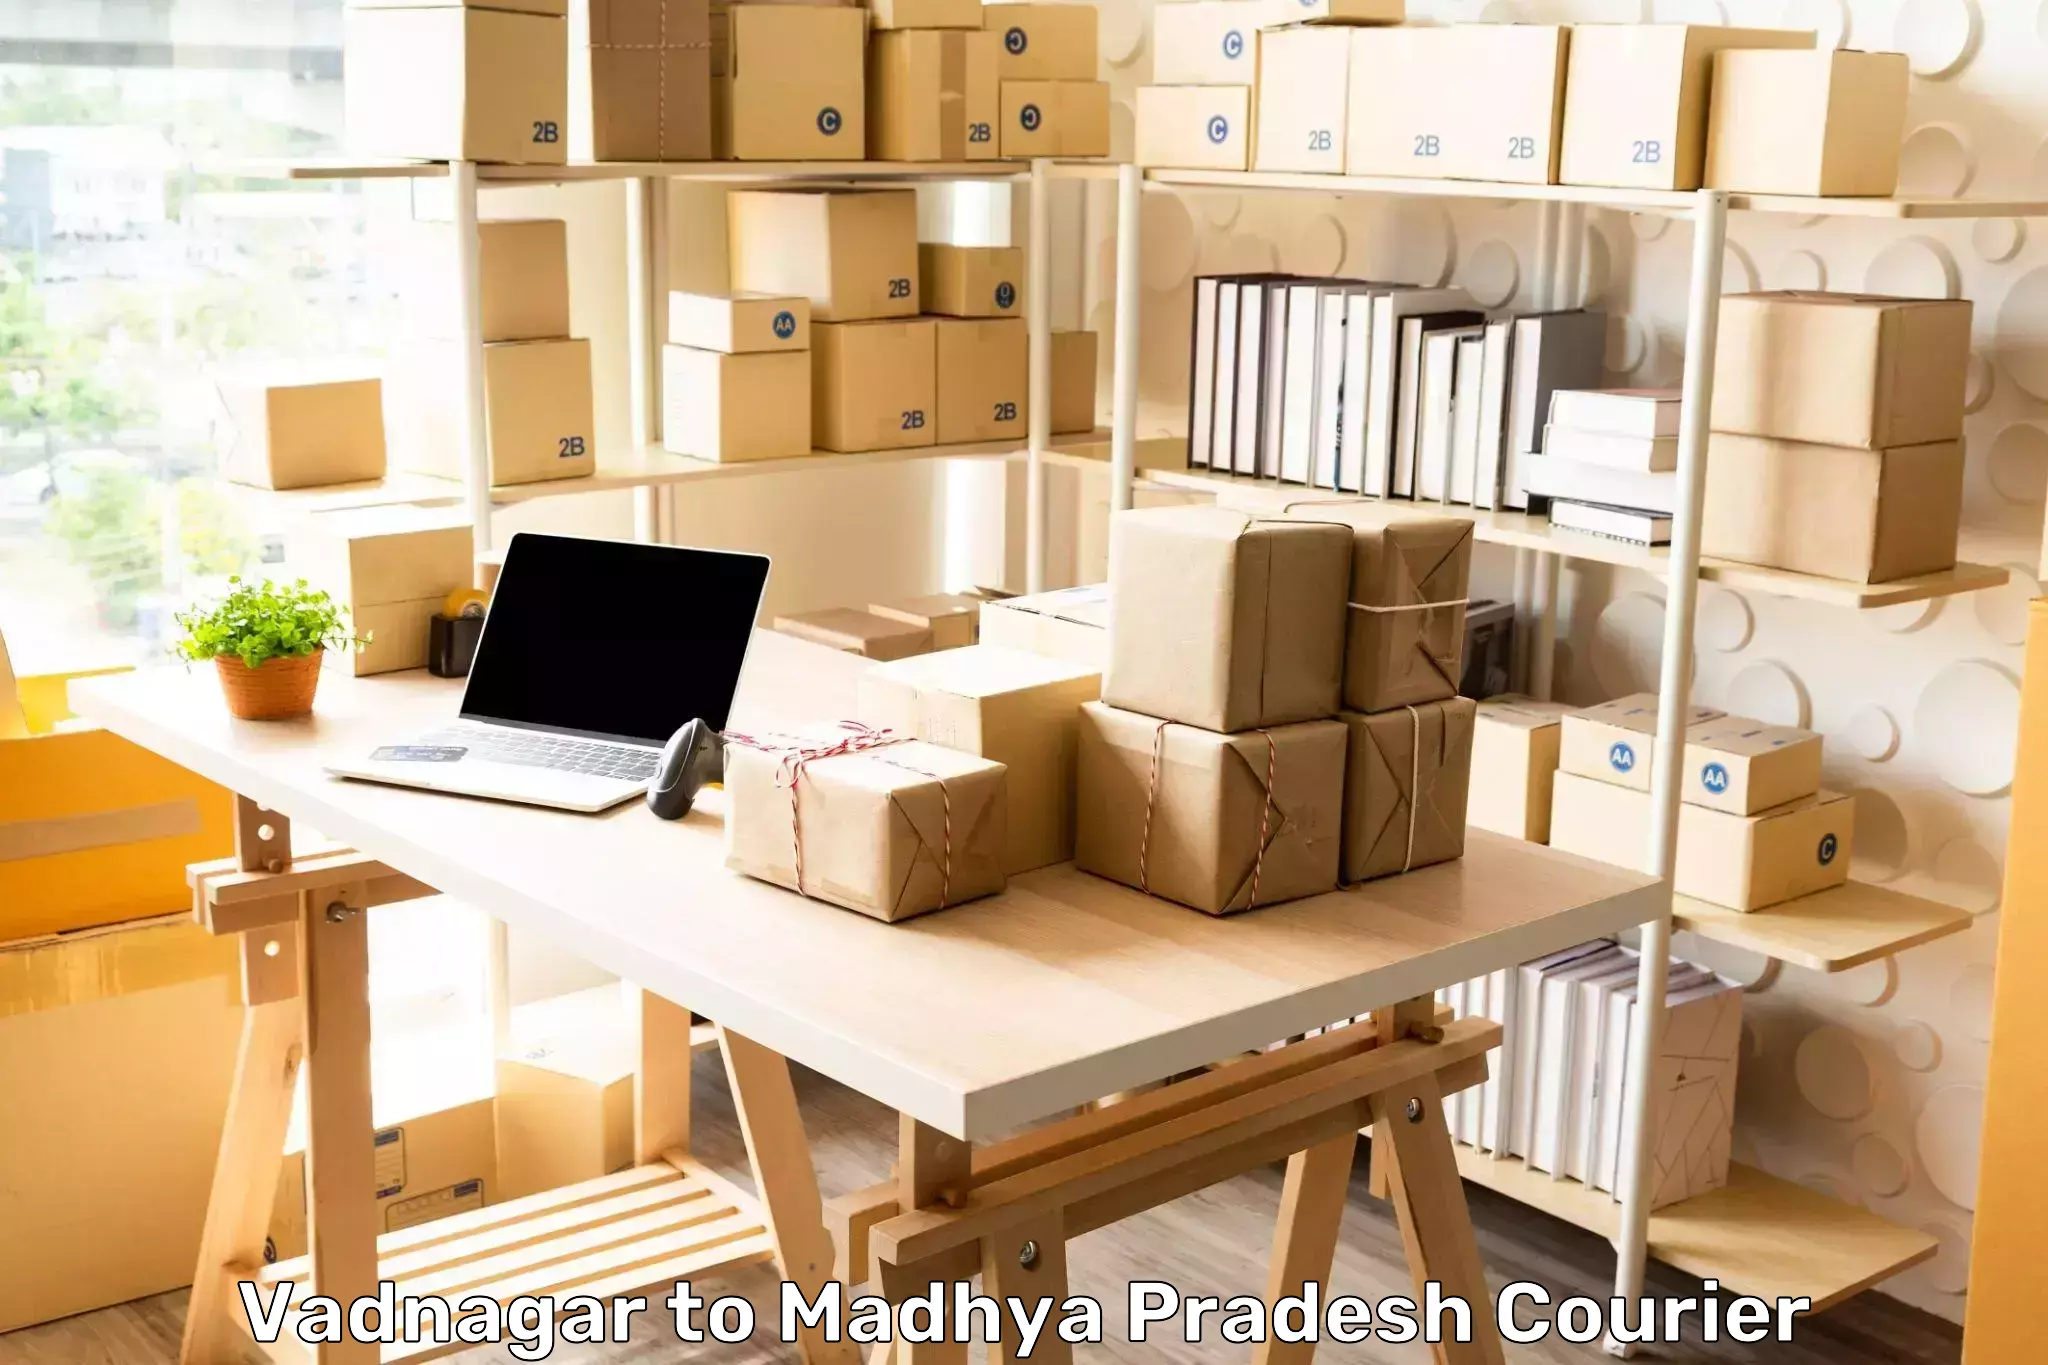 Multi-service courier options Vadnagar to Lashkar